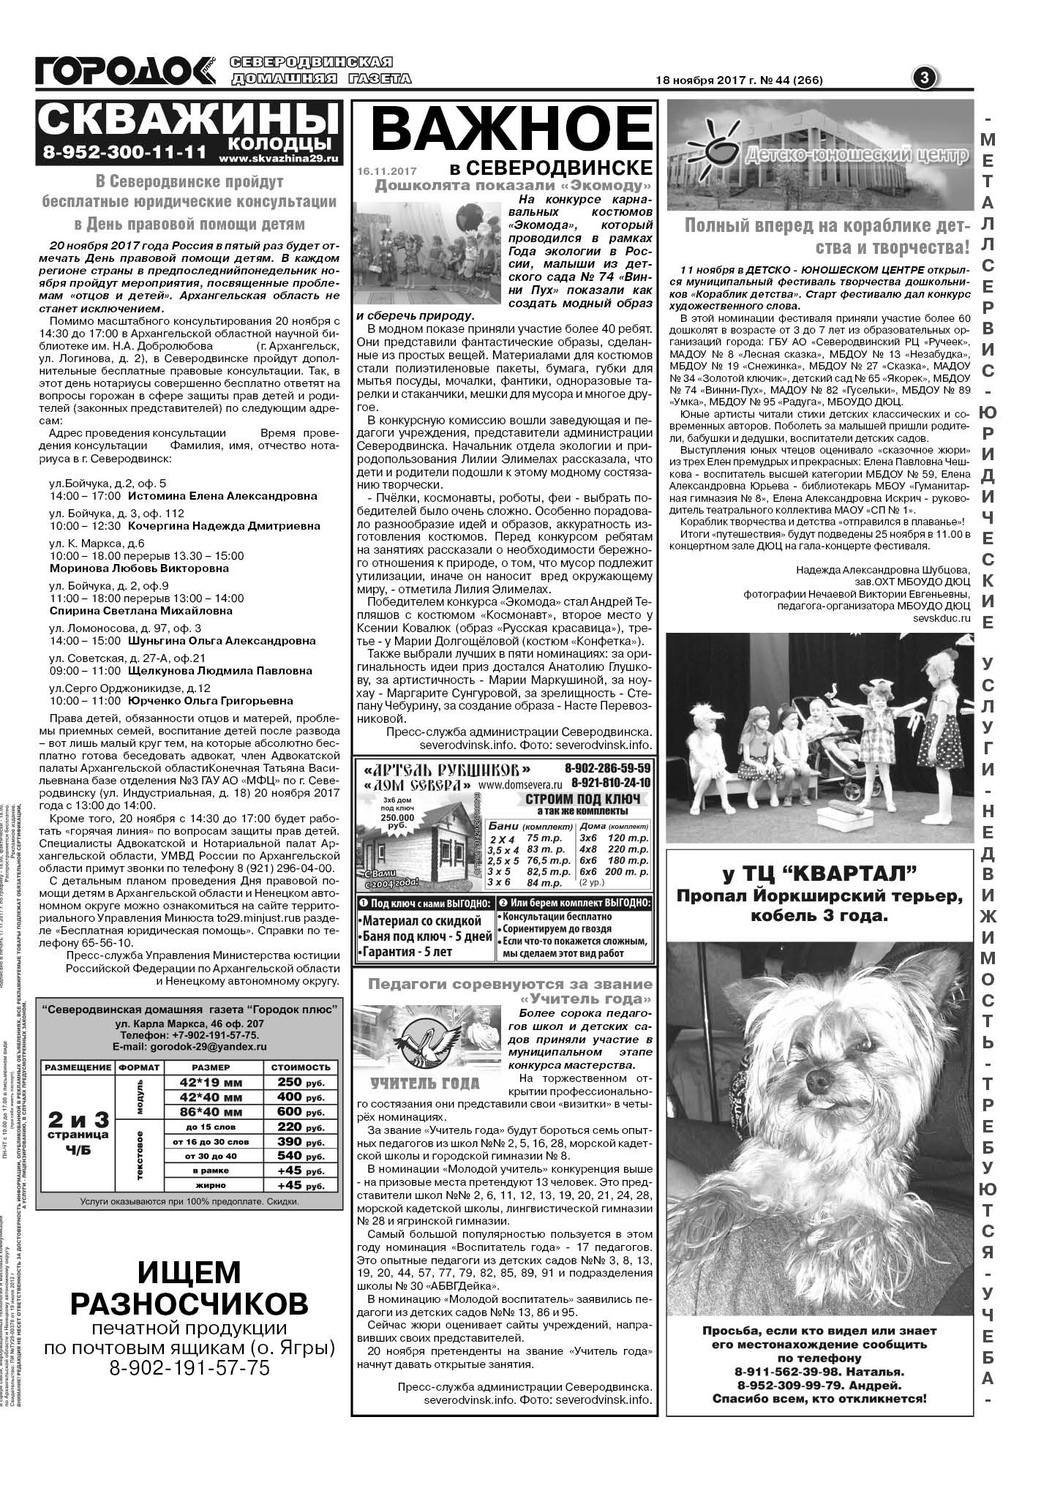 Городок плюс, выпуск номер 44 от 18 ноября 2017 года, страница 3.